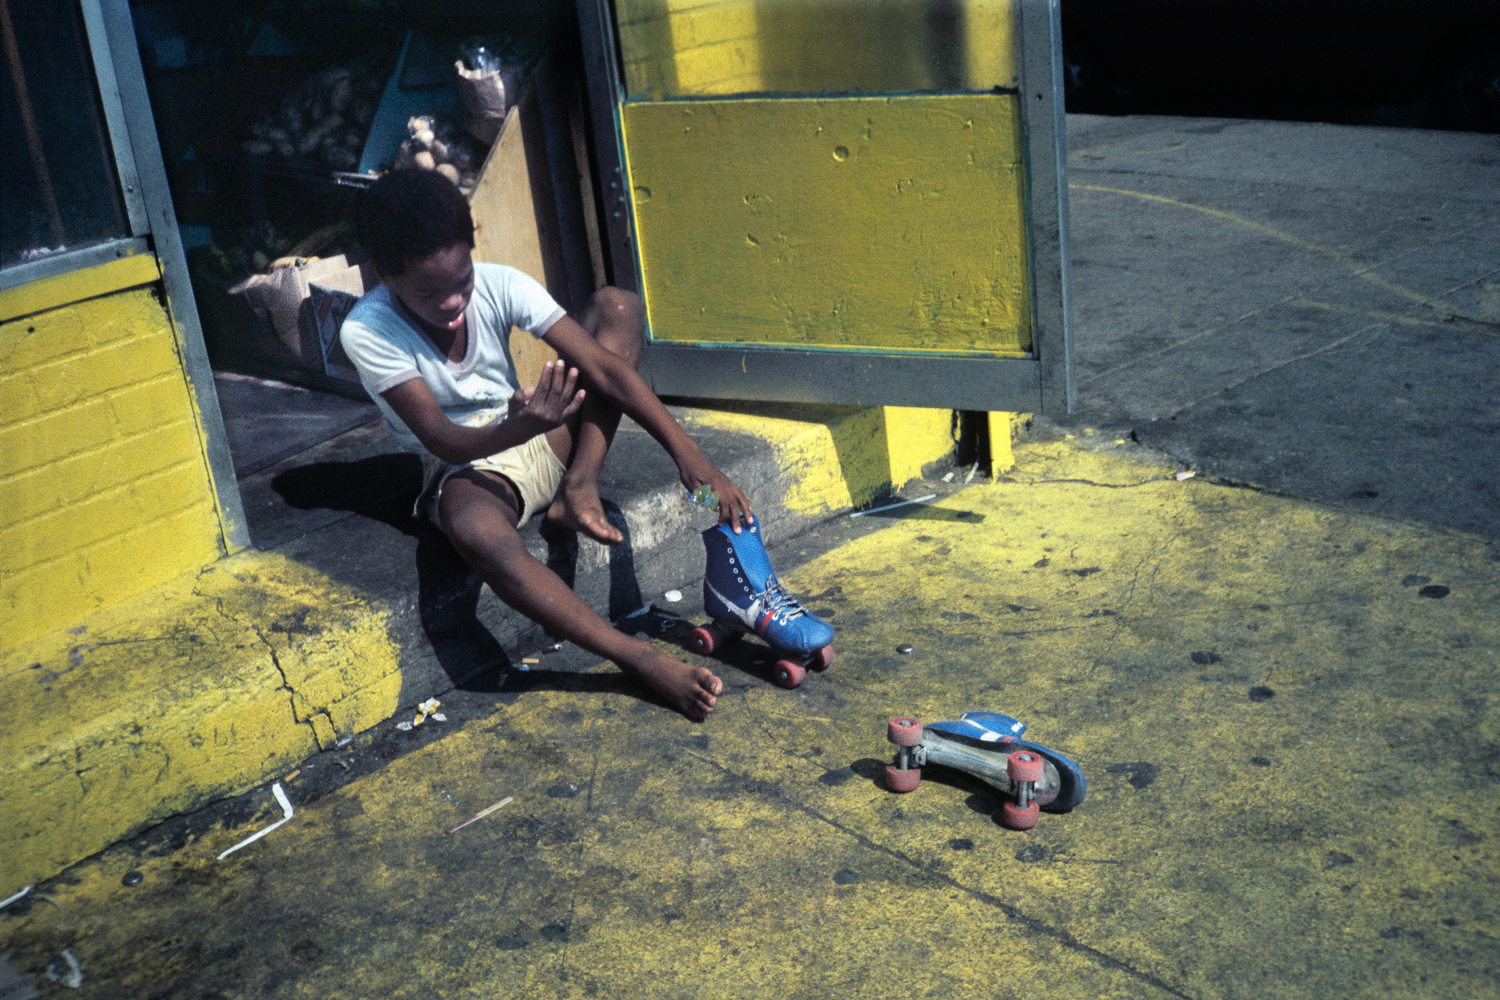 Bushwick, Brooklyn, NY circa 1984